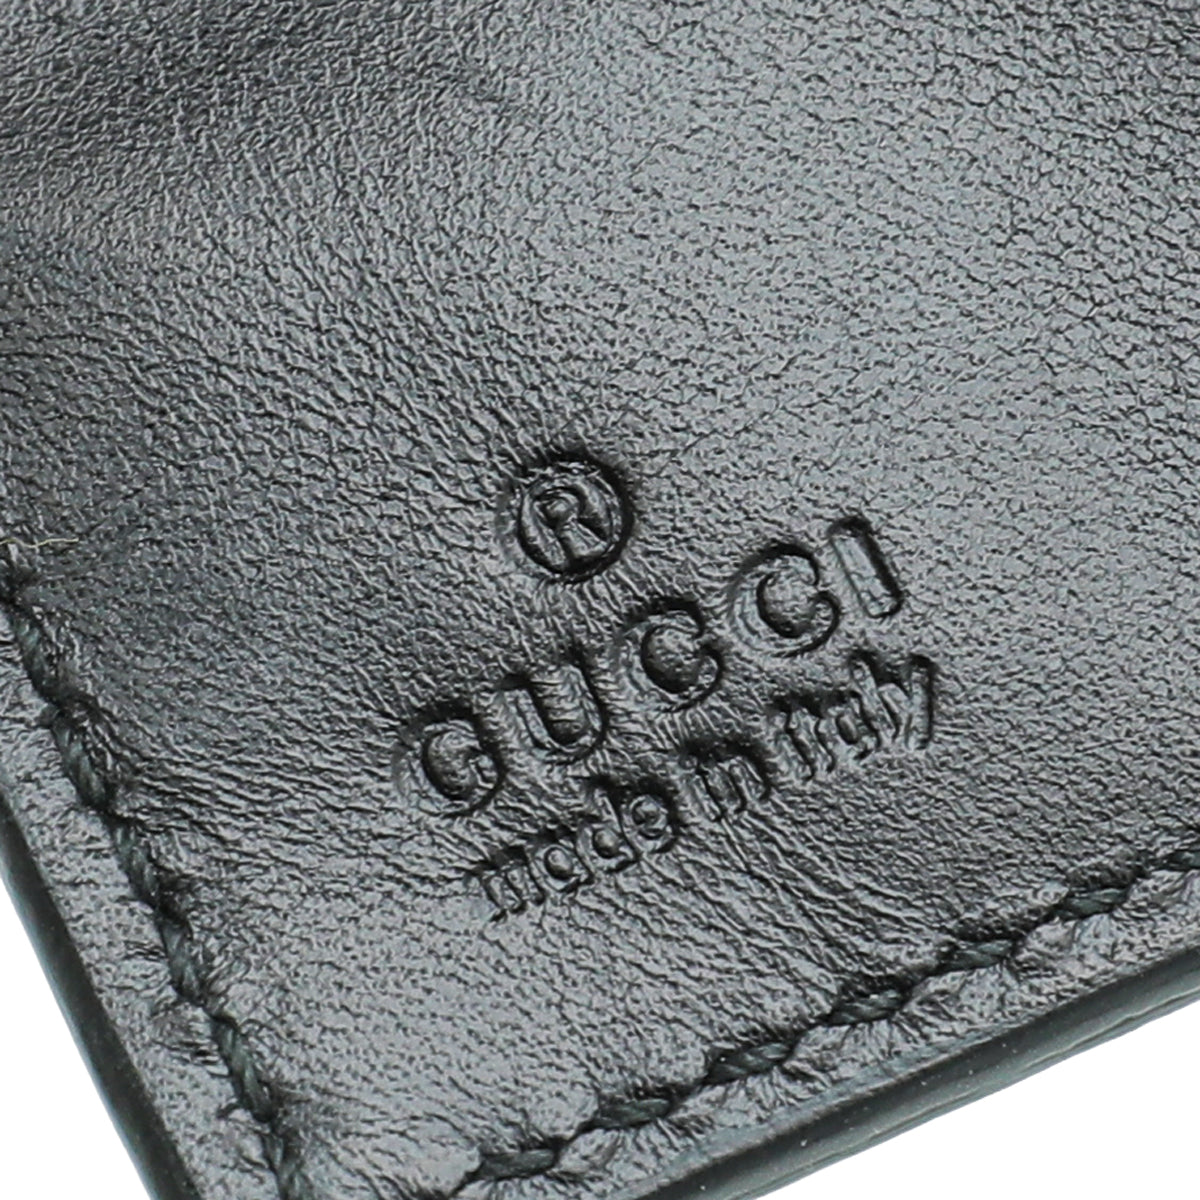 Gucci Black Diamante Bi-Fold Wallet